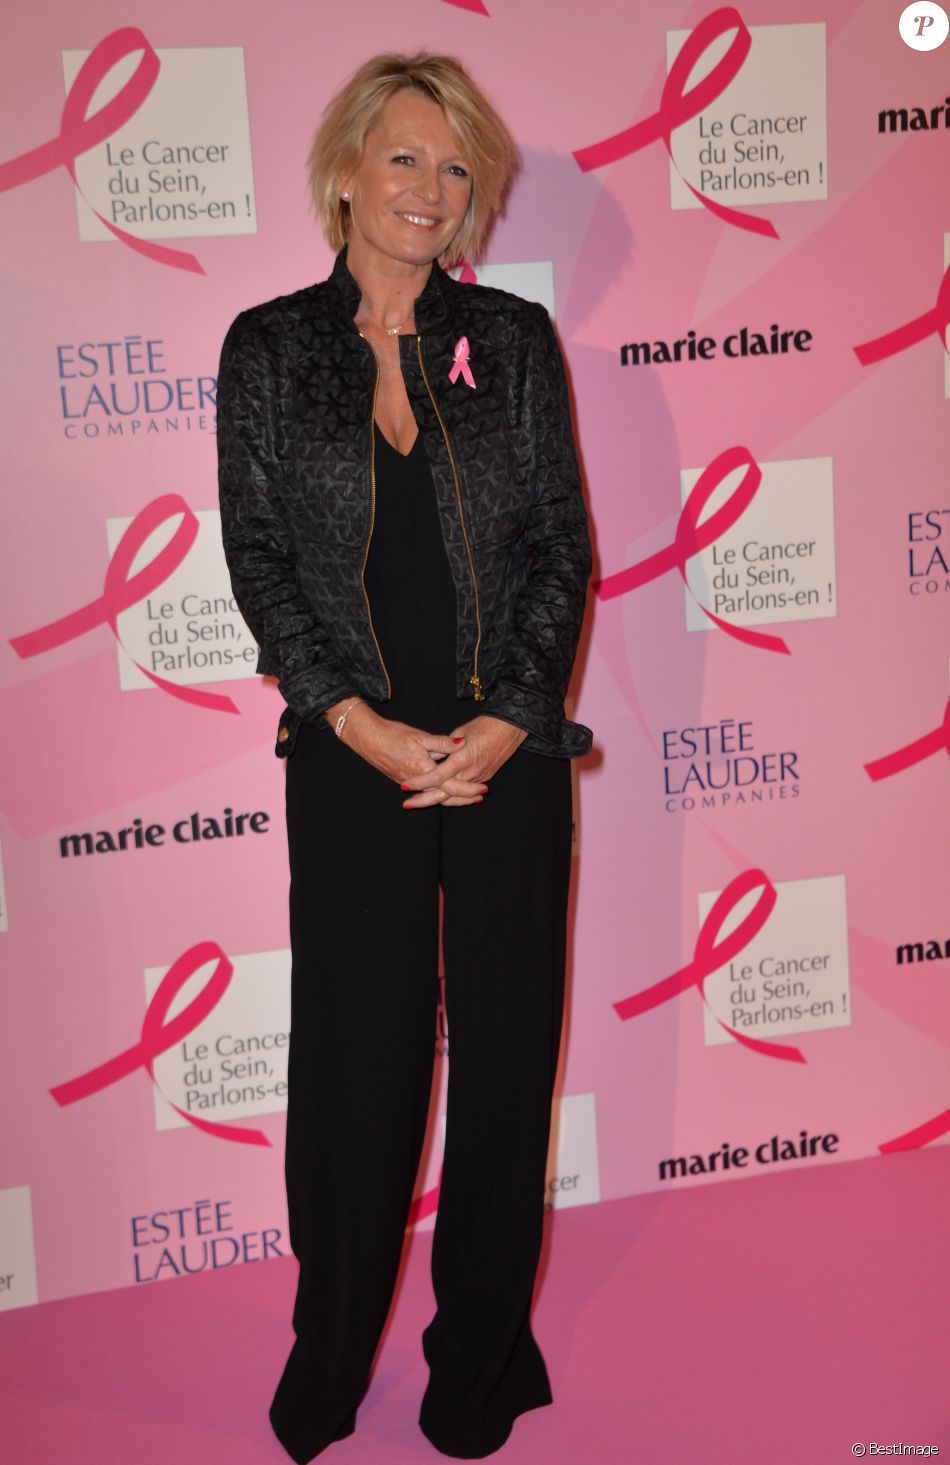 Sophie Davant - Soirée de lancement d&#039;Octobre Rose (le mois de lutte contre le cancer du sein) au Palais Chaillot à Paris le 28 septembre 2015. Lors de cette soirée prestigieuse, les équipes de l&#039;association &quot;Le cancer du sein, Parlons-en!&quot; et les dirigeants du groupe Estée Lauder illumineront la Tour Eiffel en rose.